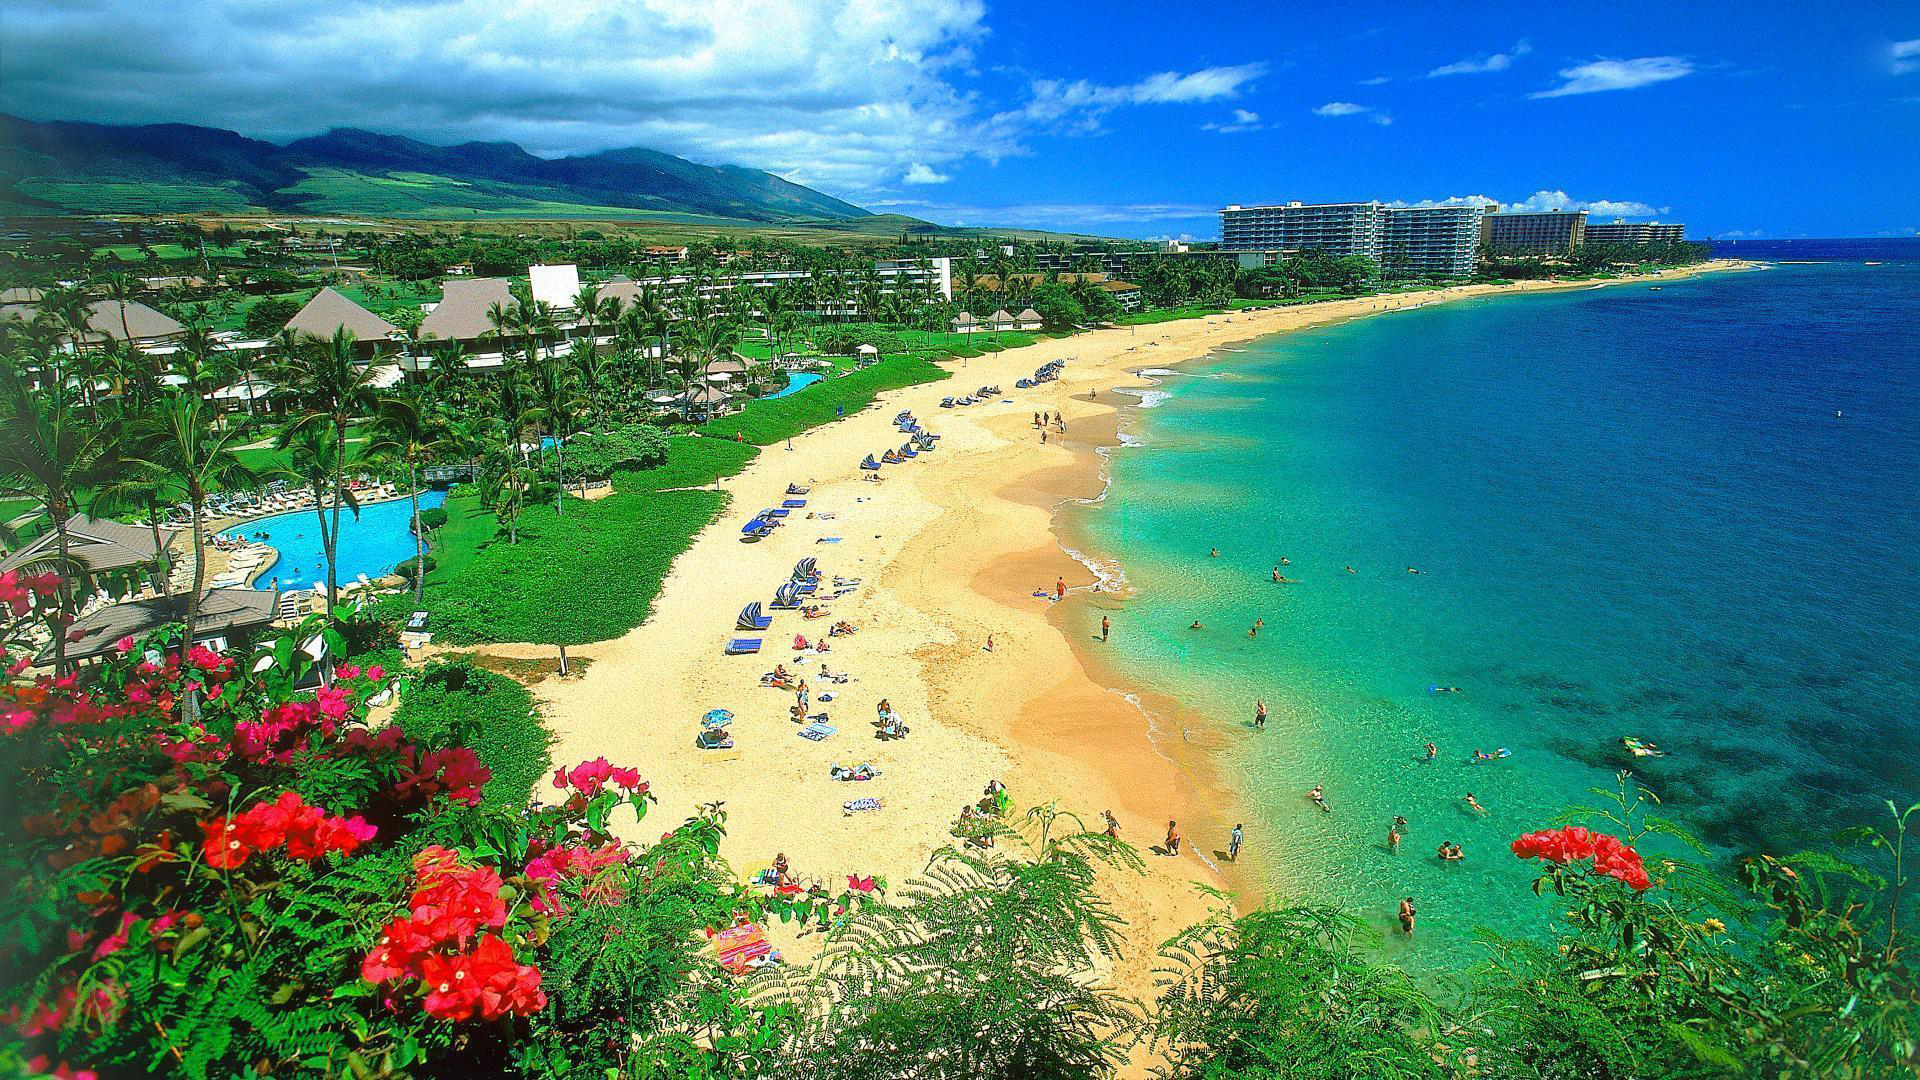 Hawaii với những bãi biển đẹp như tranh vẽ, cảm giác thư giãn và yên bình khi đến với đây là không thể tả nổi. Hãy cùng chinh phục cuộc sống bận rộn với những hình ảnh tuyệt đẹp của Hawaii.